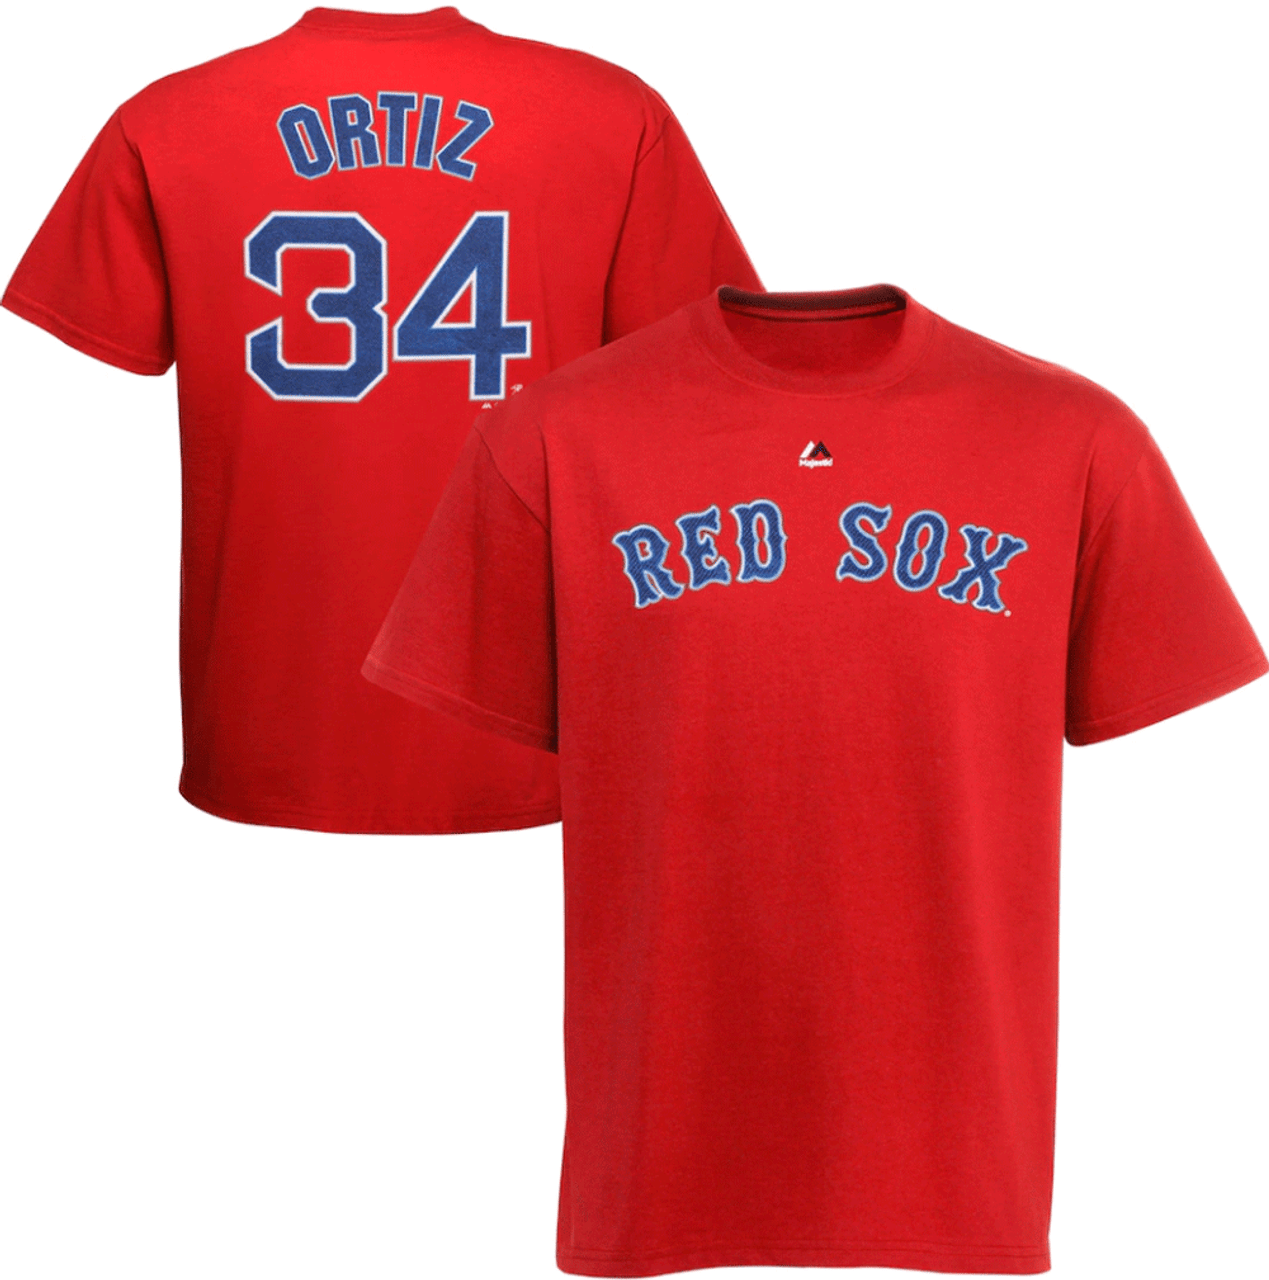 Boston Red Sox T-shirt, David Ortiz, Big Papi, Size XL